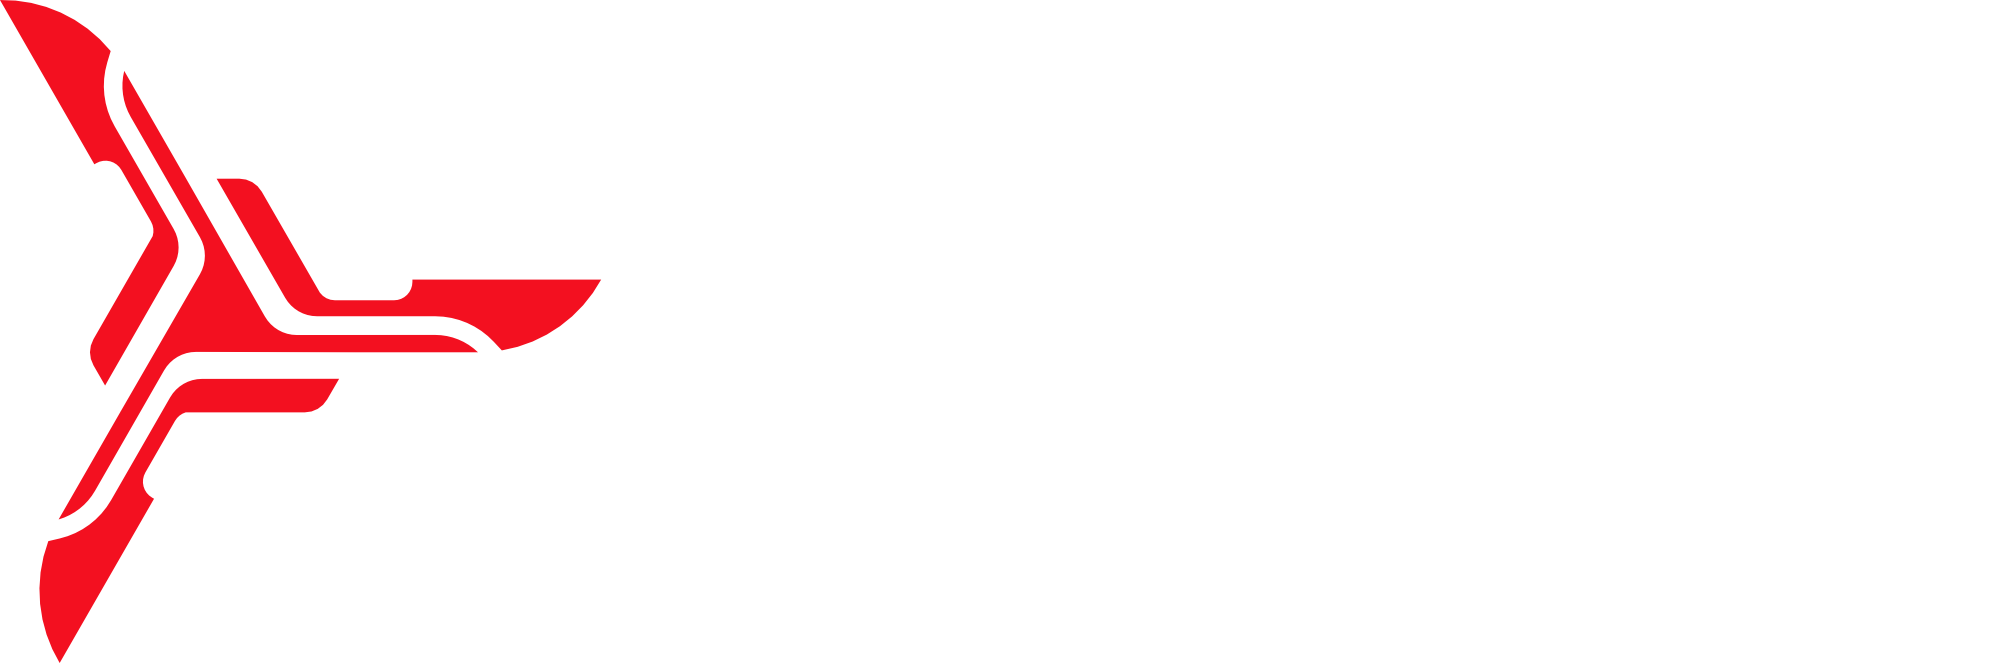 skytechgaming Logo